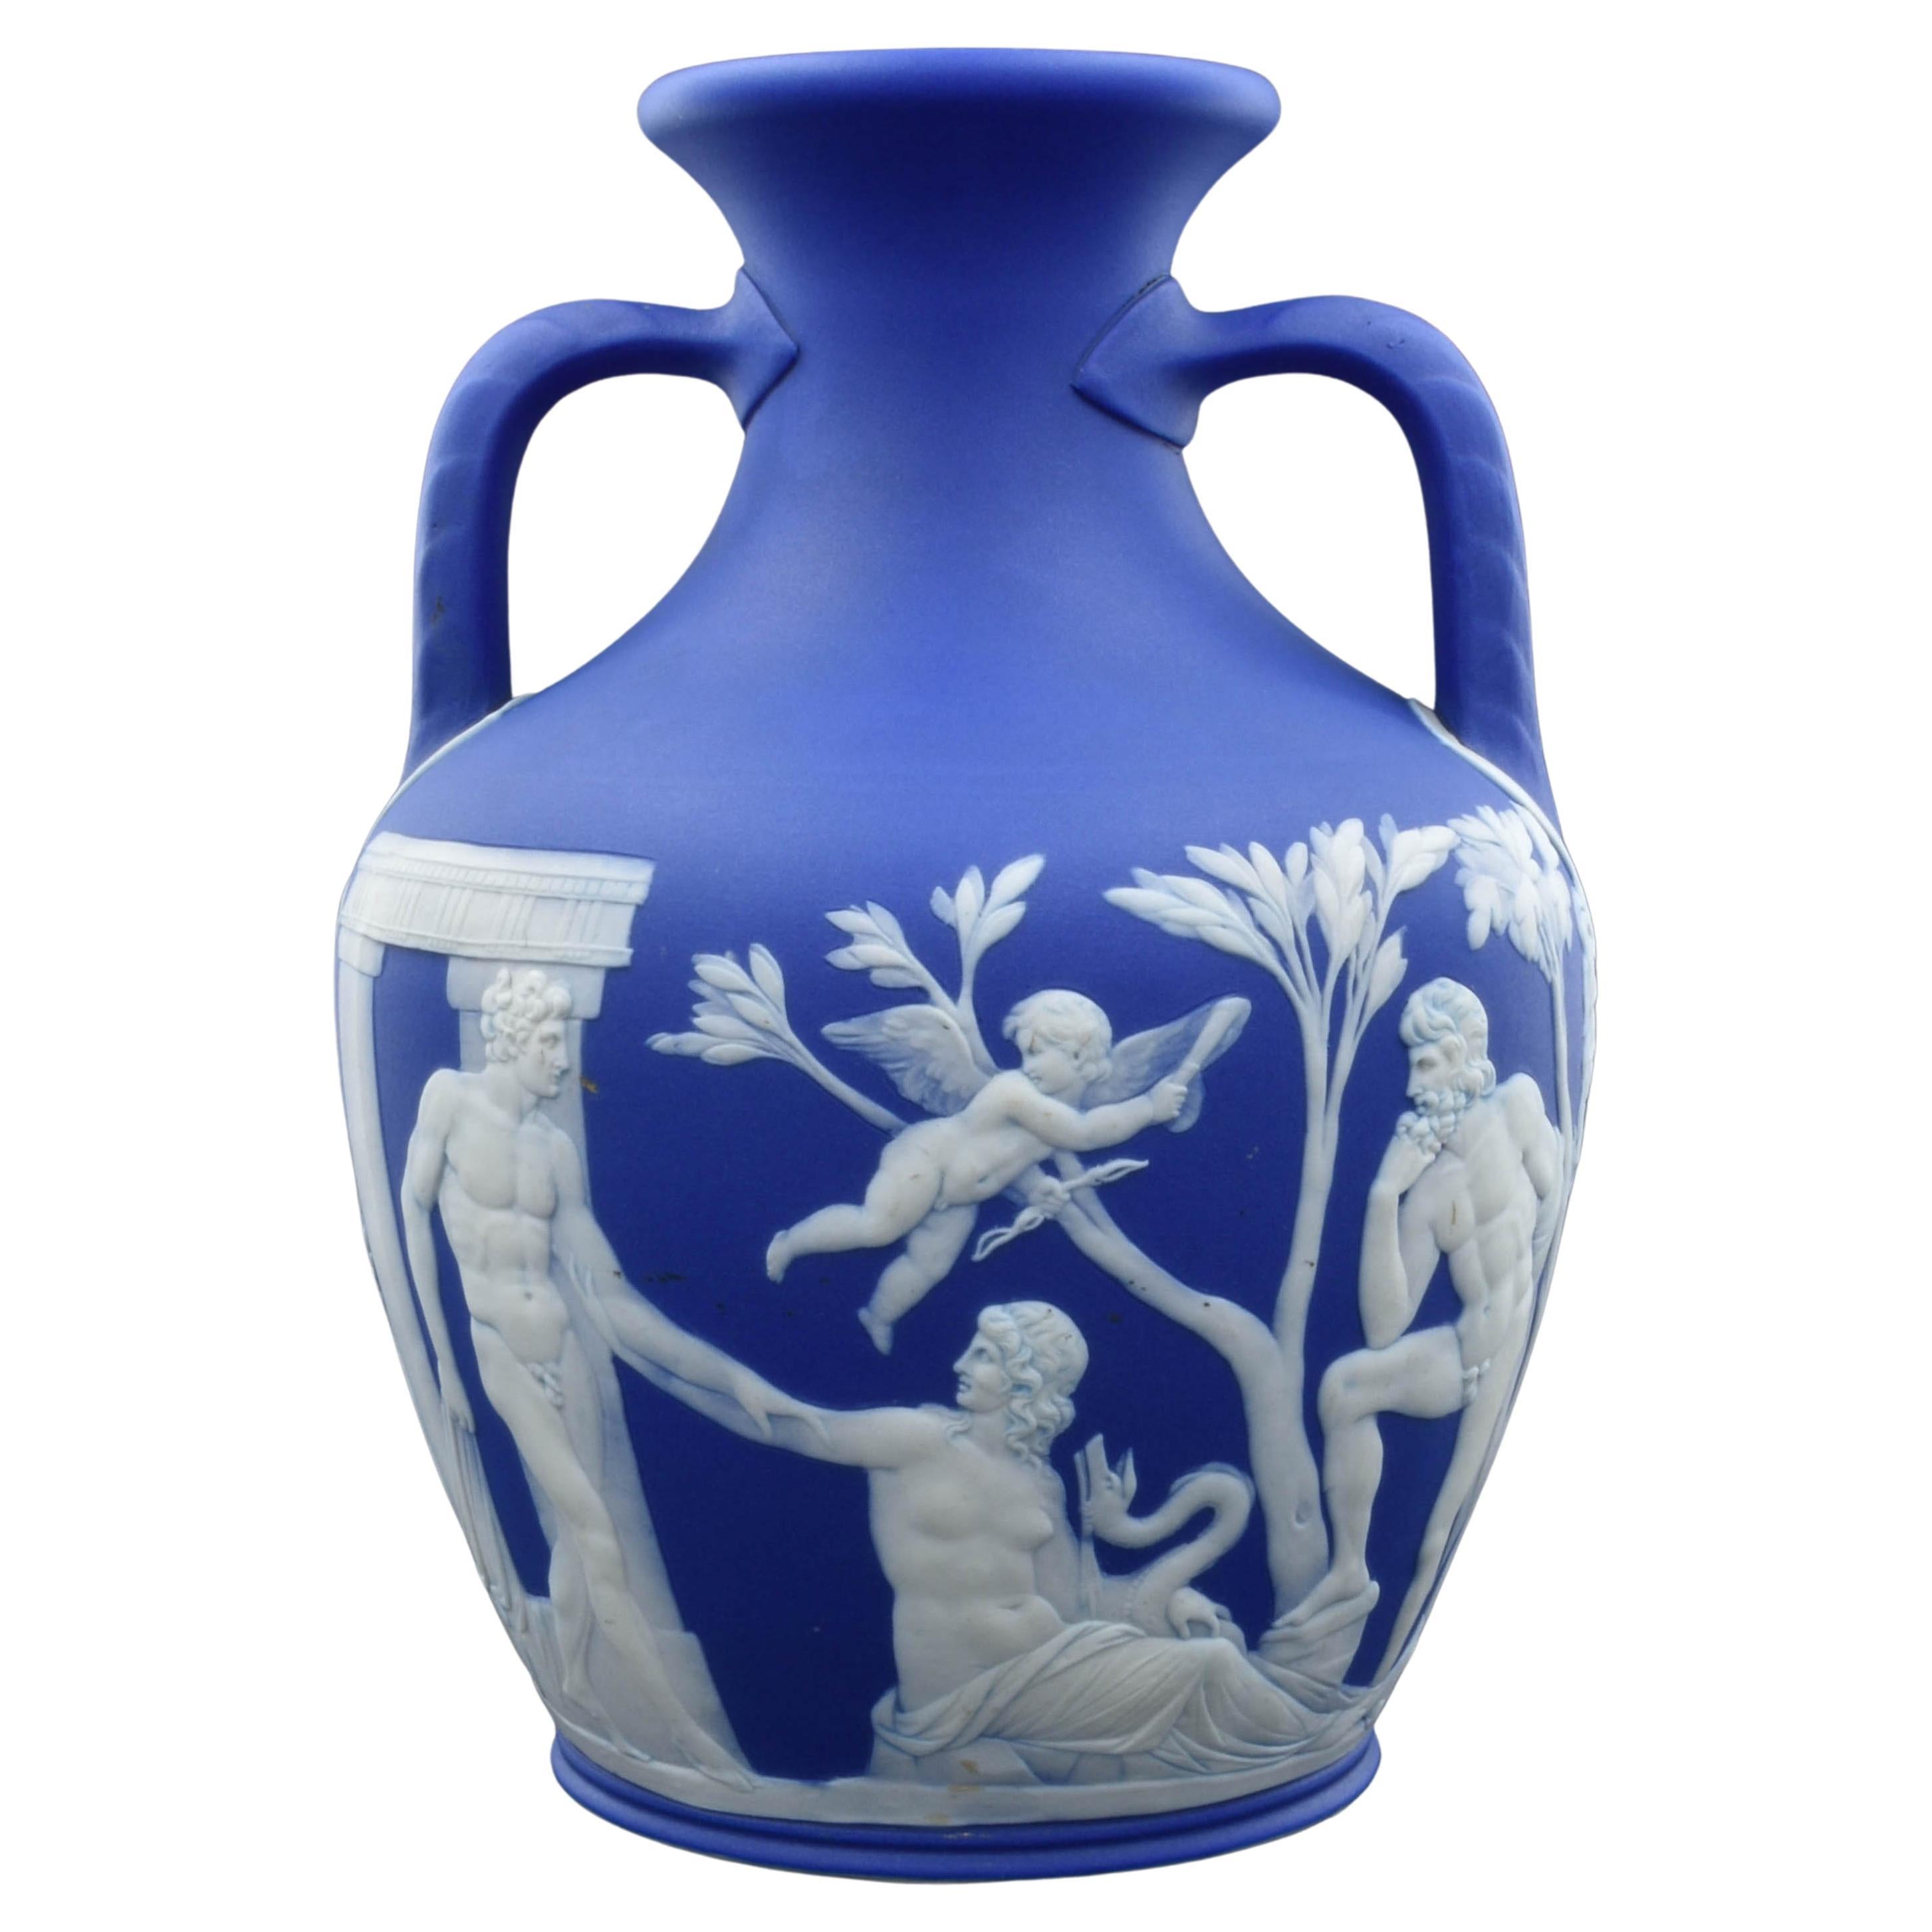 Portland Vase, Full Sized, Wedgwood, circa 1845